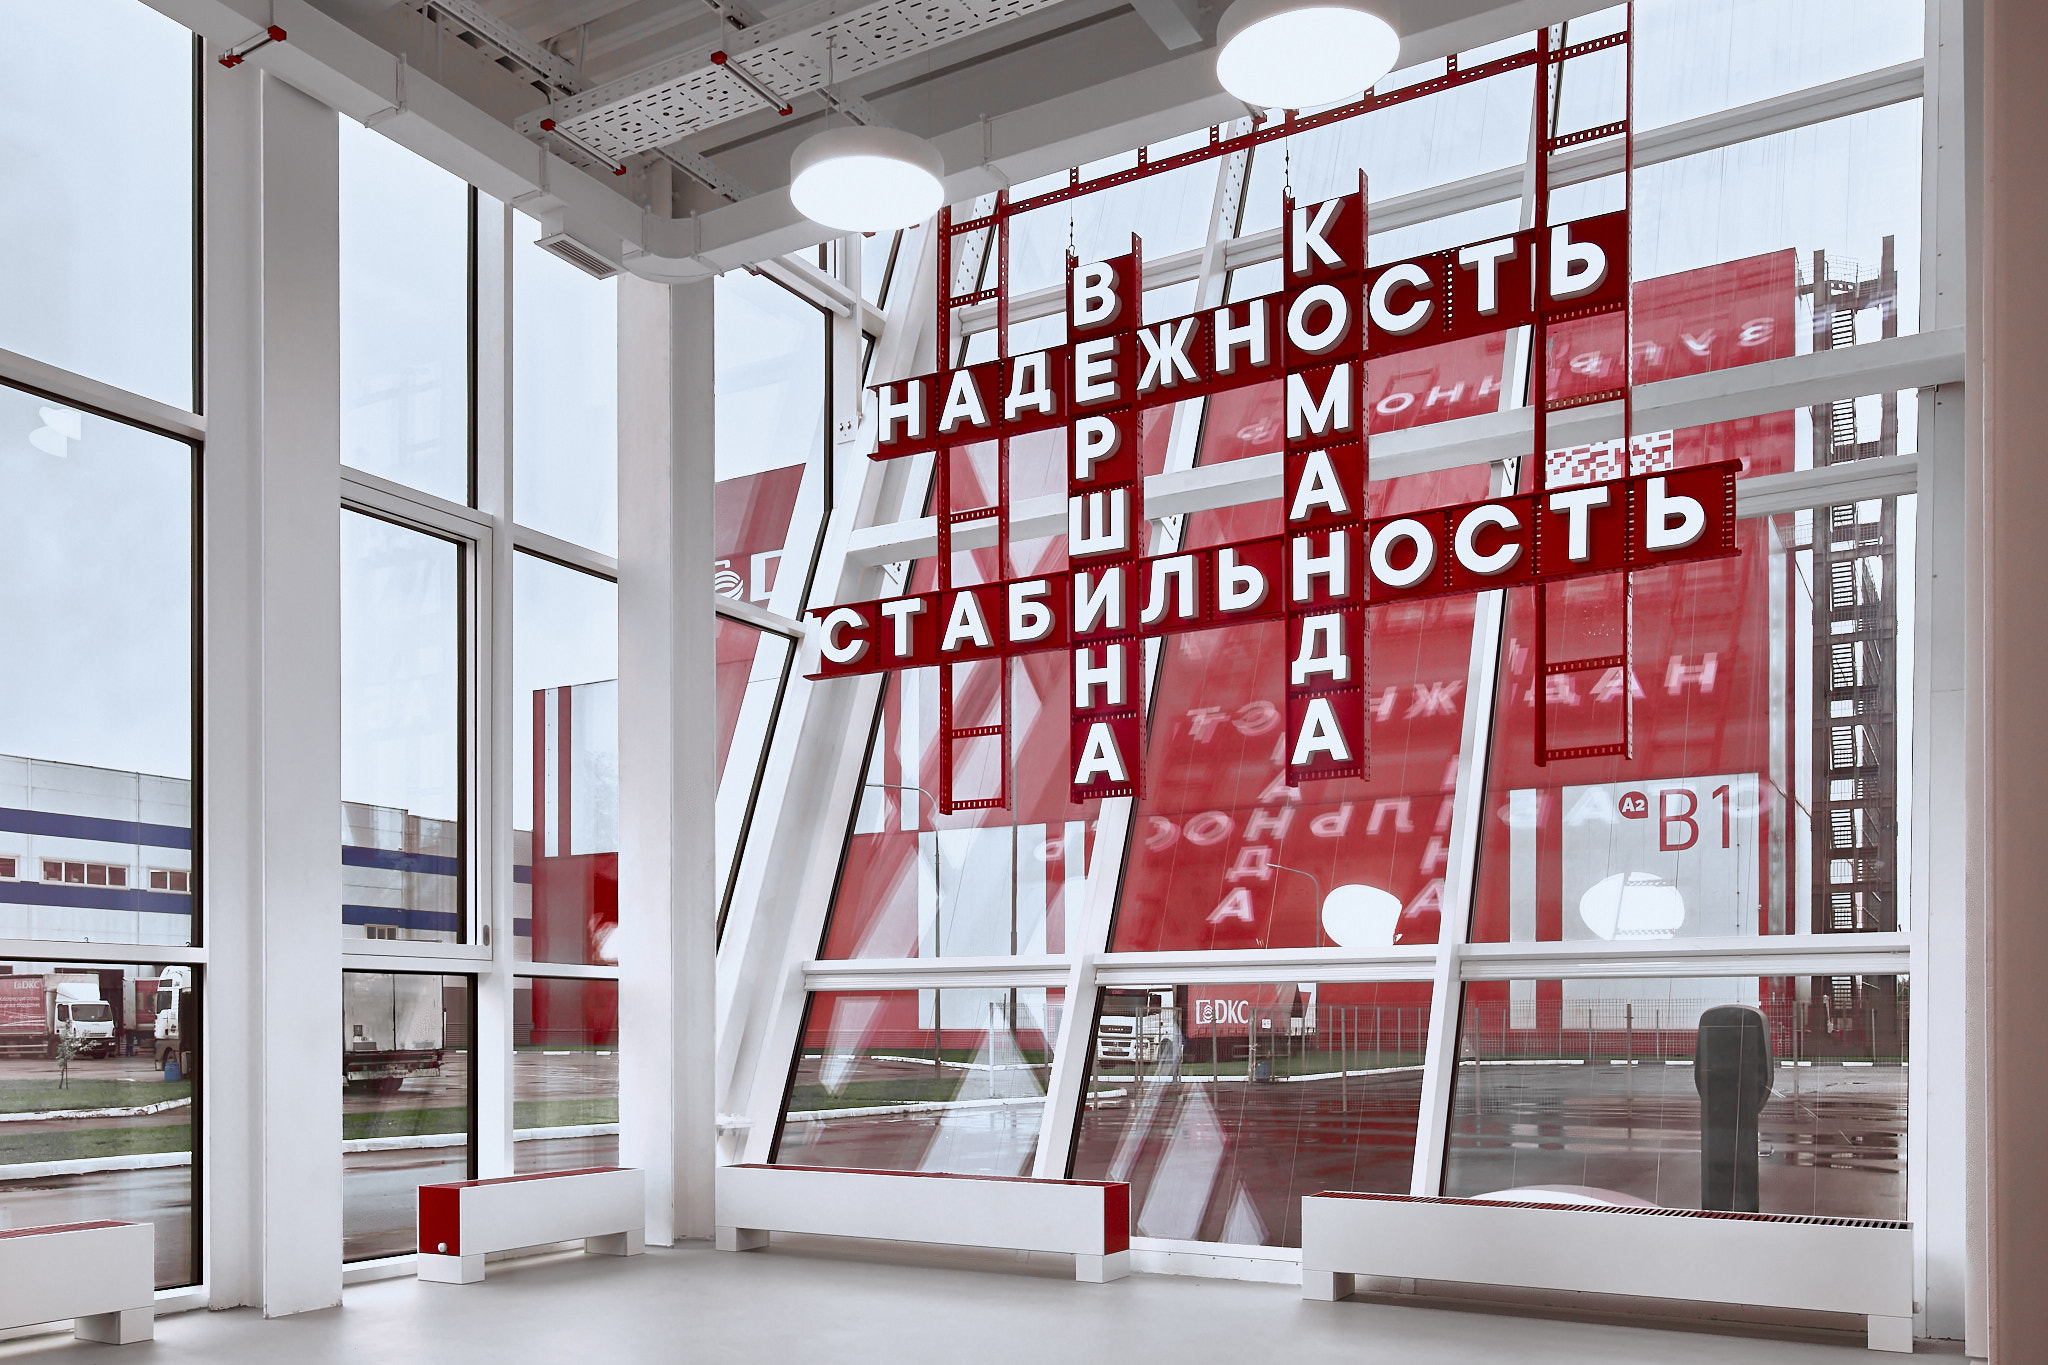 Паблик-арт инсталляция художника Марины Звягинцевой «Лестница вверх» в здании «Академии ДКС» в Твери